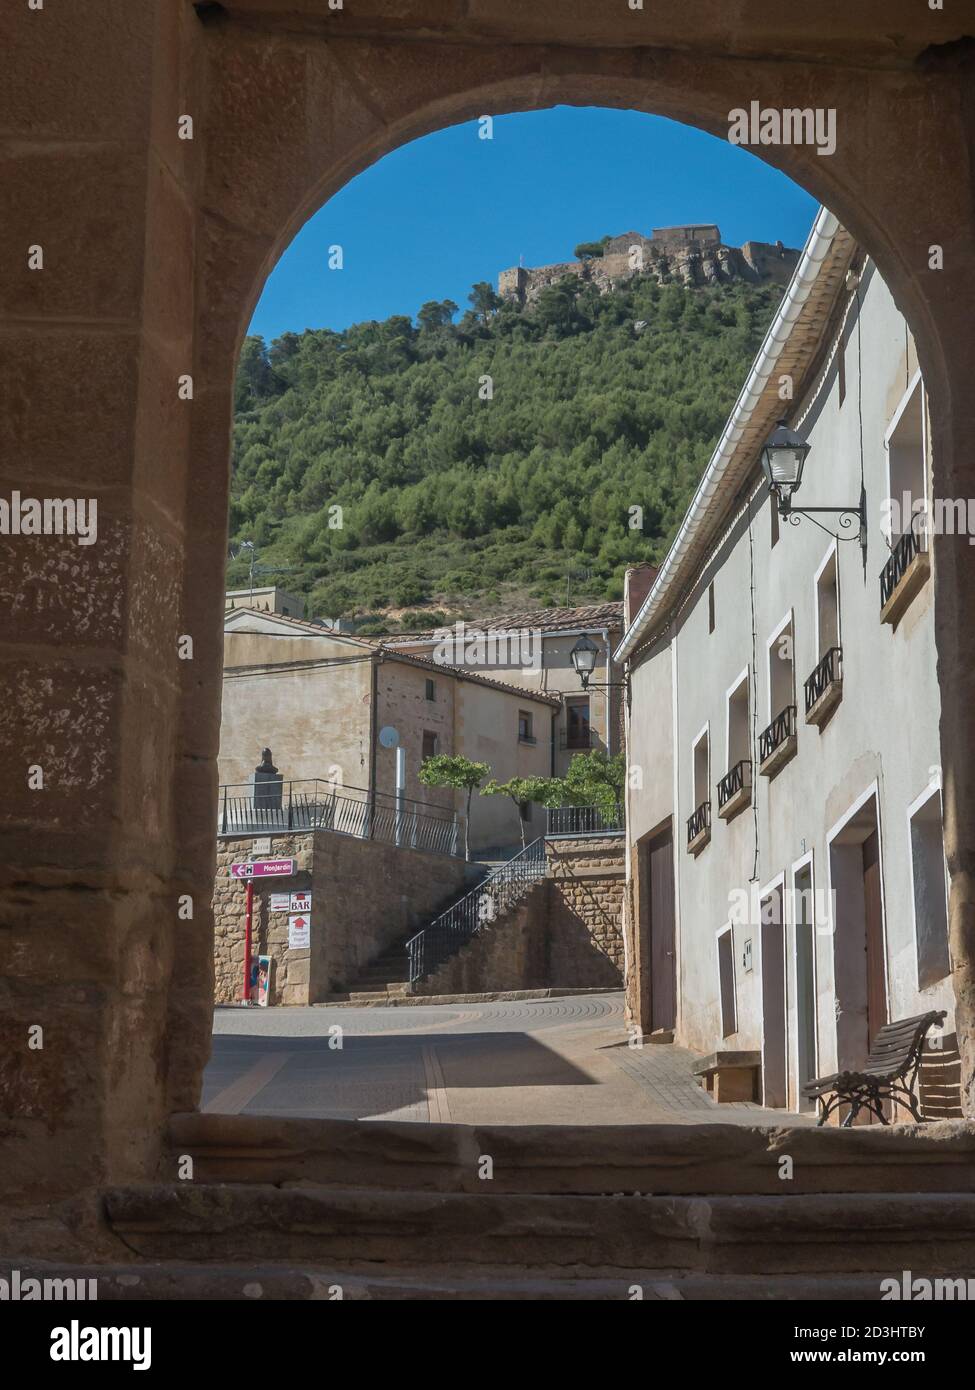 VILLAMAYOR DE MONJARDIN, SPAIN - Aug 17, 2014: Buildings in Villamayor de Monjardin of the Way of St. James in S Stock Photo